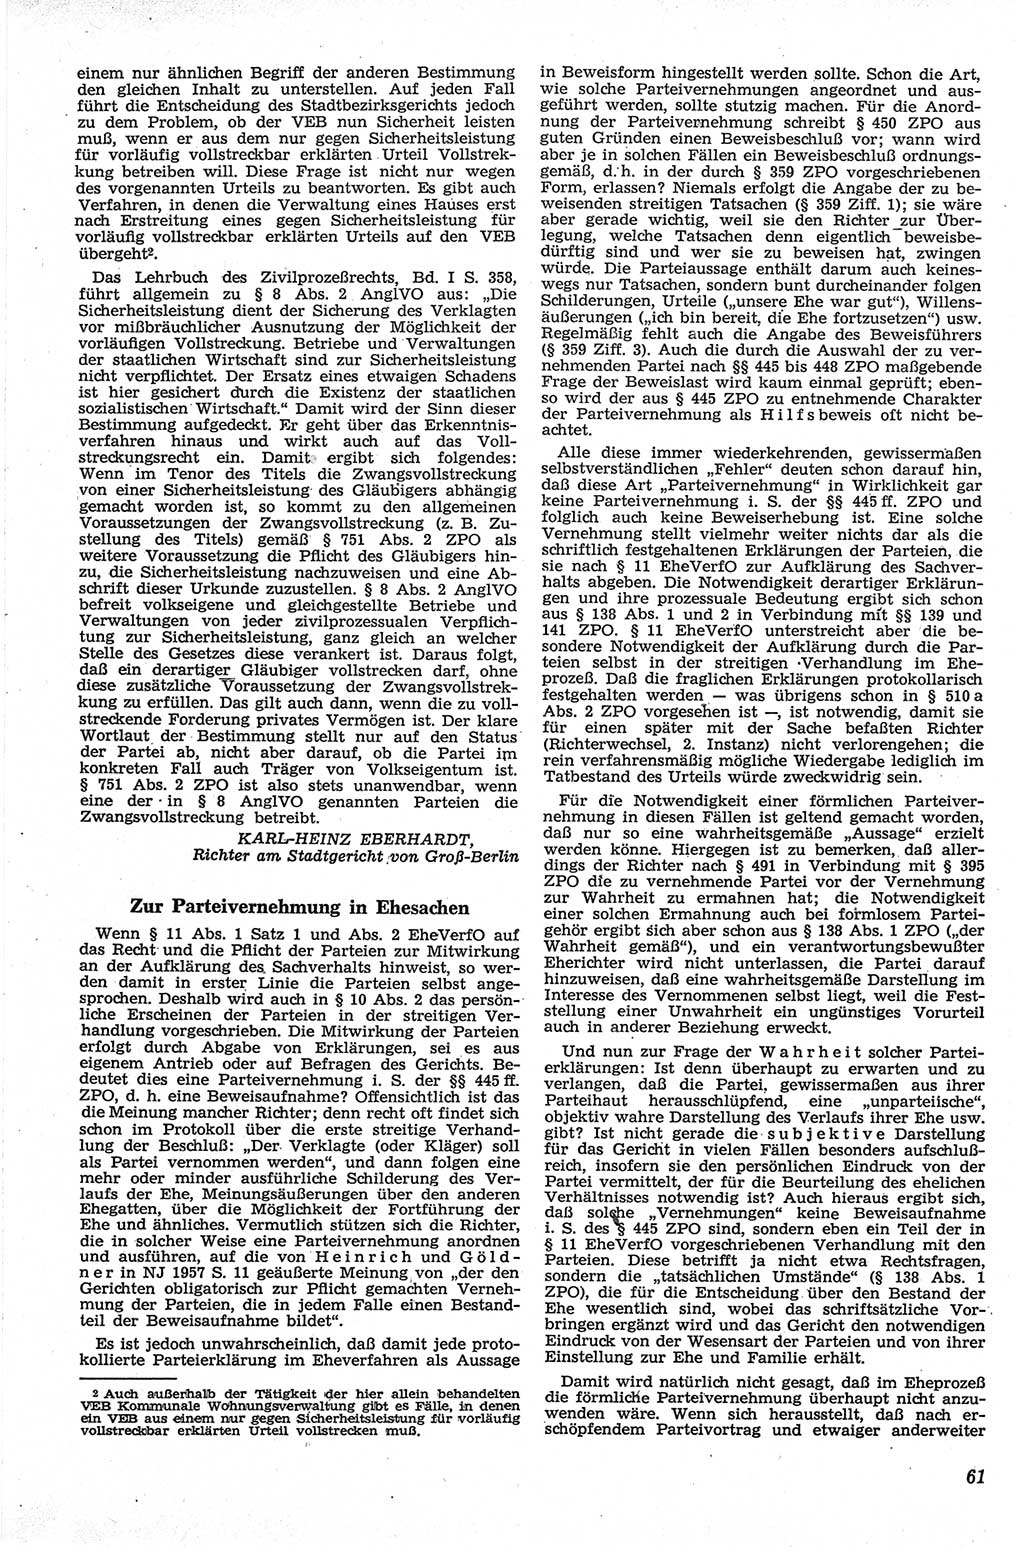 Neue Justiz (NJ), Zeitschrift für Recht und Rechtswissenschaft [Deutsche Demokratische Republik (DDR)], 13. Jahrgang 1959, Seite 61 (NJ DDR 1959, S. 61)